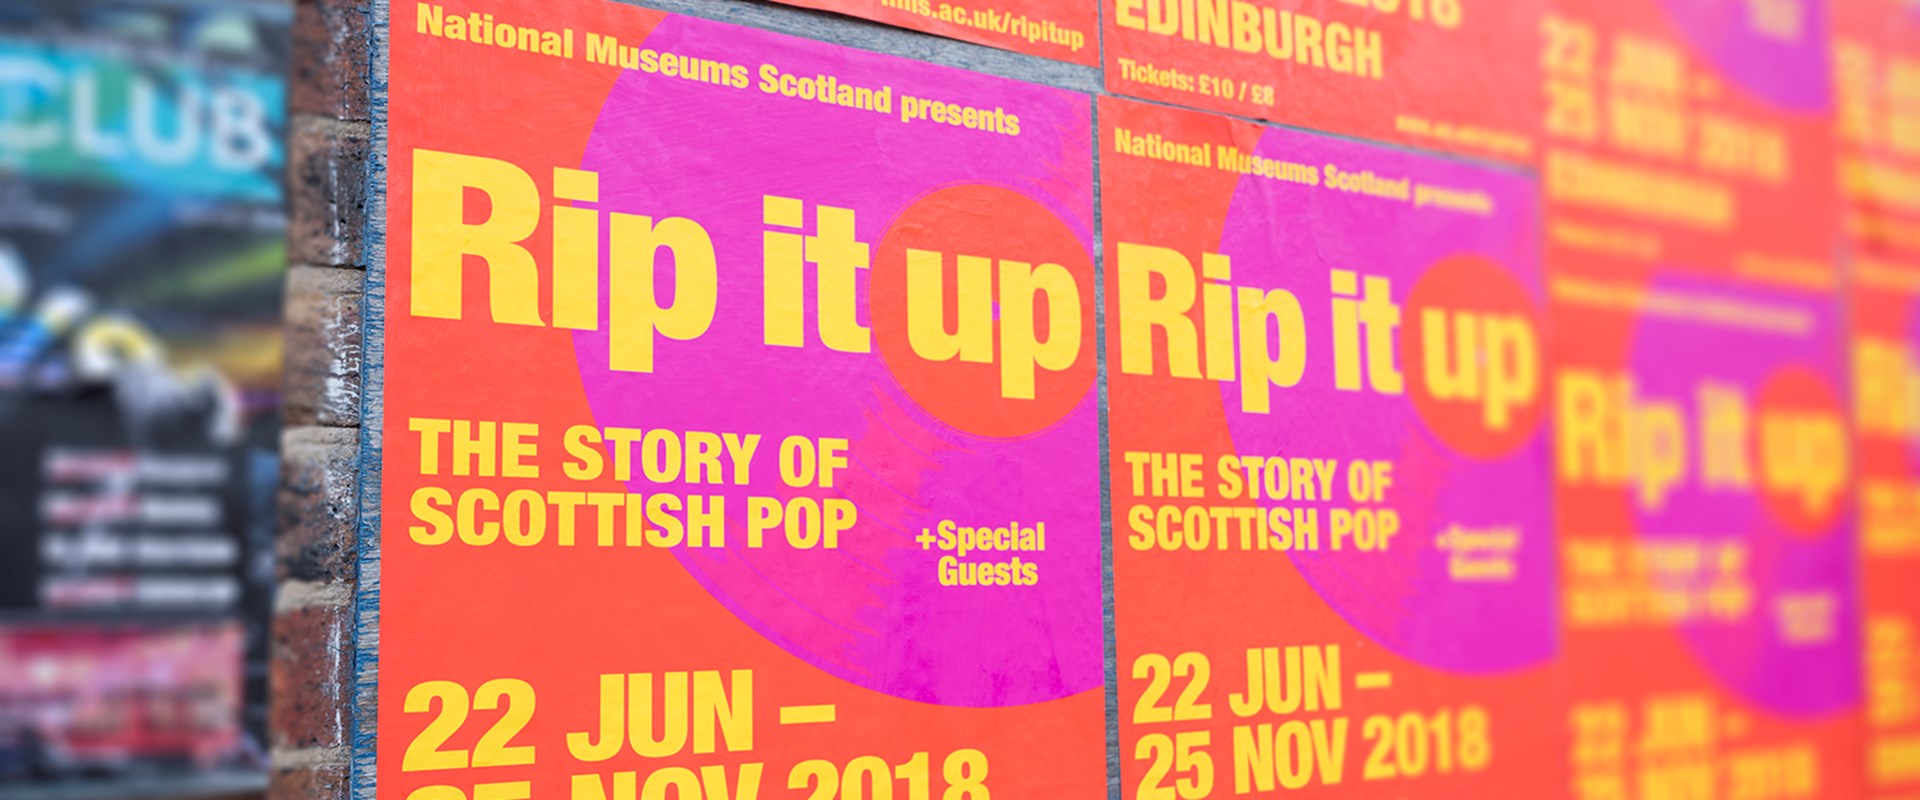 details Recreatie Grand First Major Exhibition on Scottish Pop Music Opens in Edinburgh